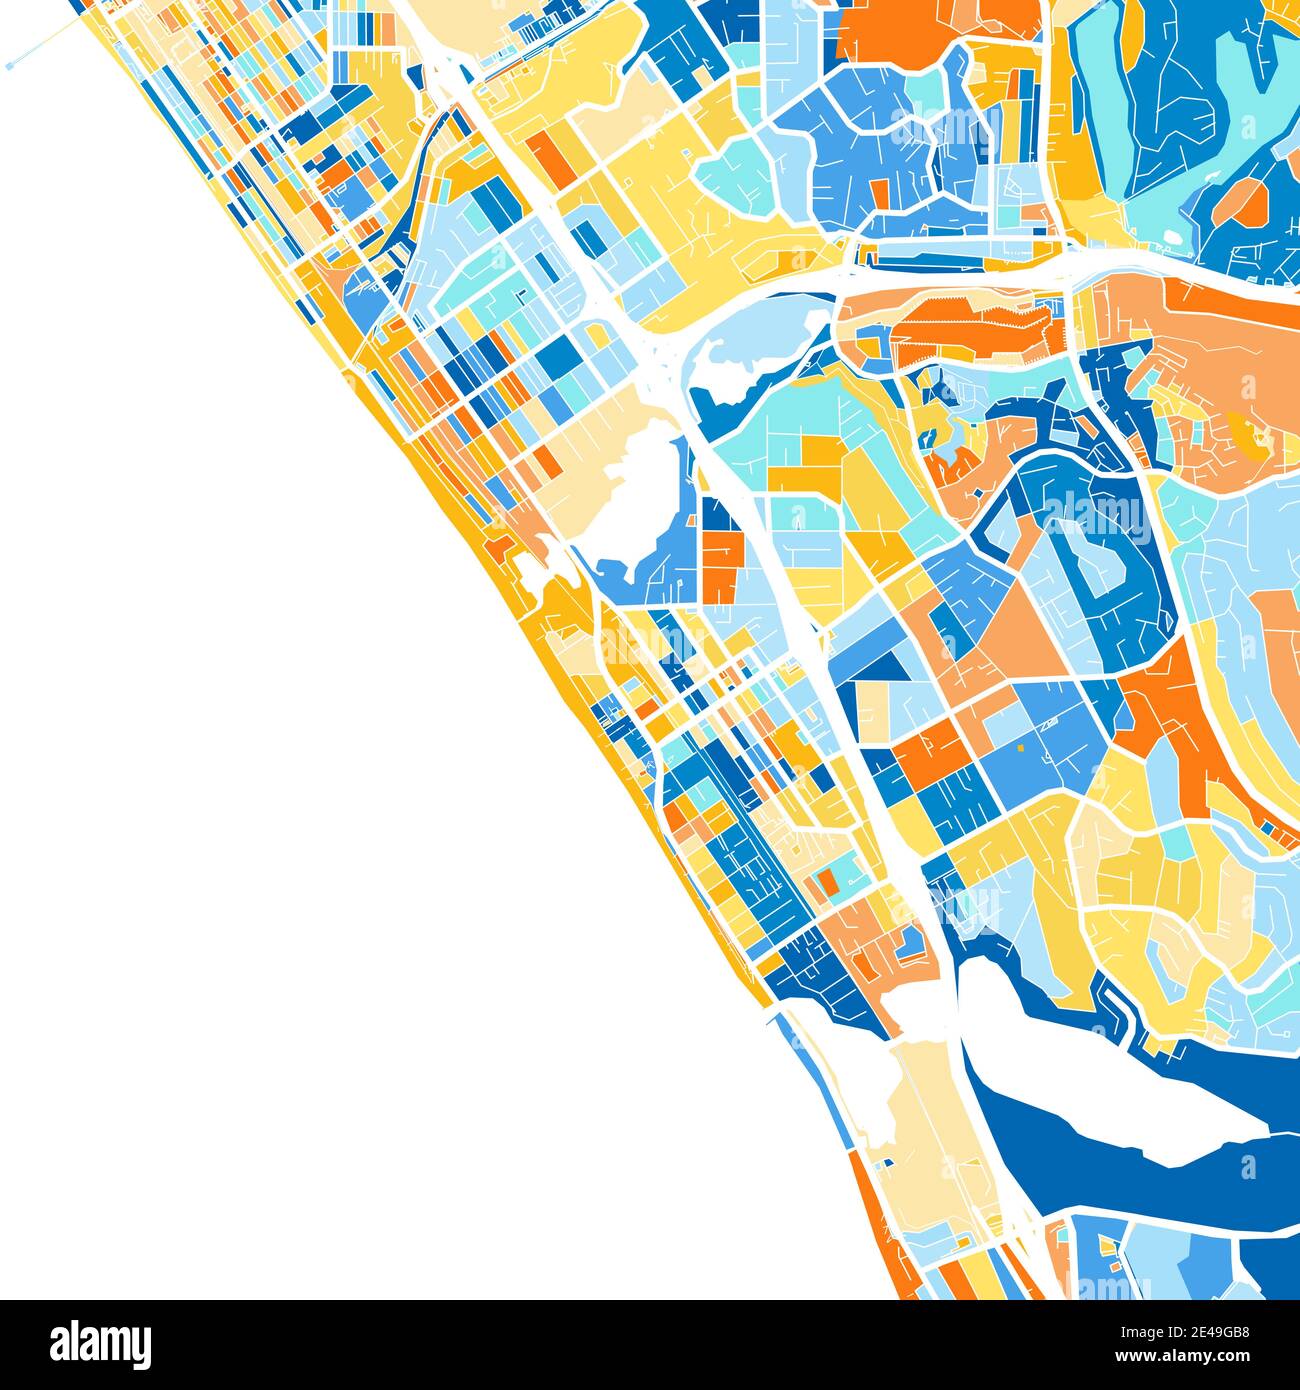 Carte d'art couleur de Carlsbad, Californie, Etats-Unis dans le blues et l'orange. Les gradations de couleurs de la carte Carlsbad suivent un motif aléatoire. Illustration de Vecteur